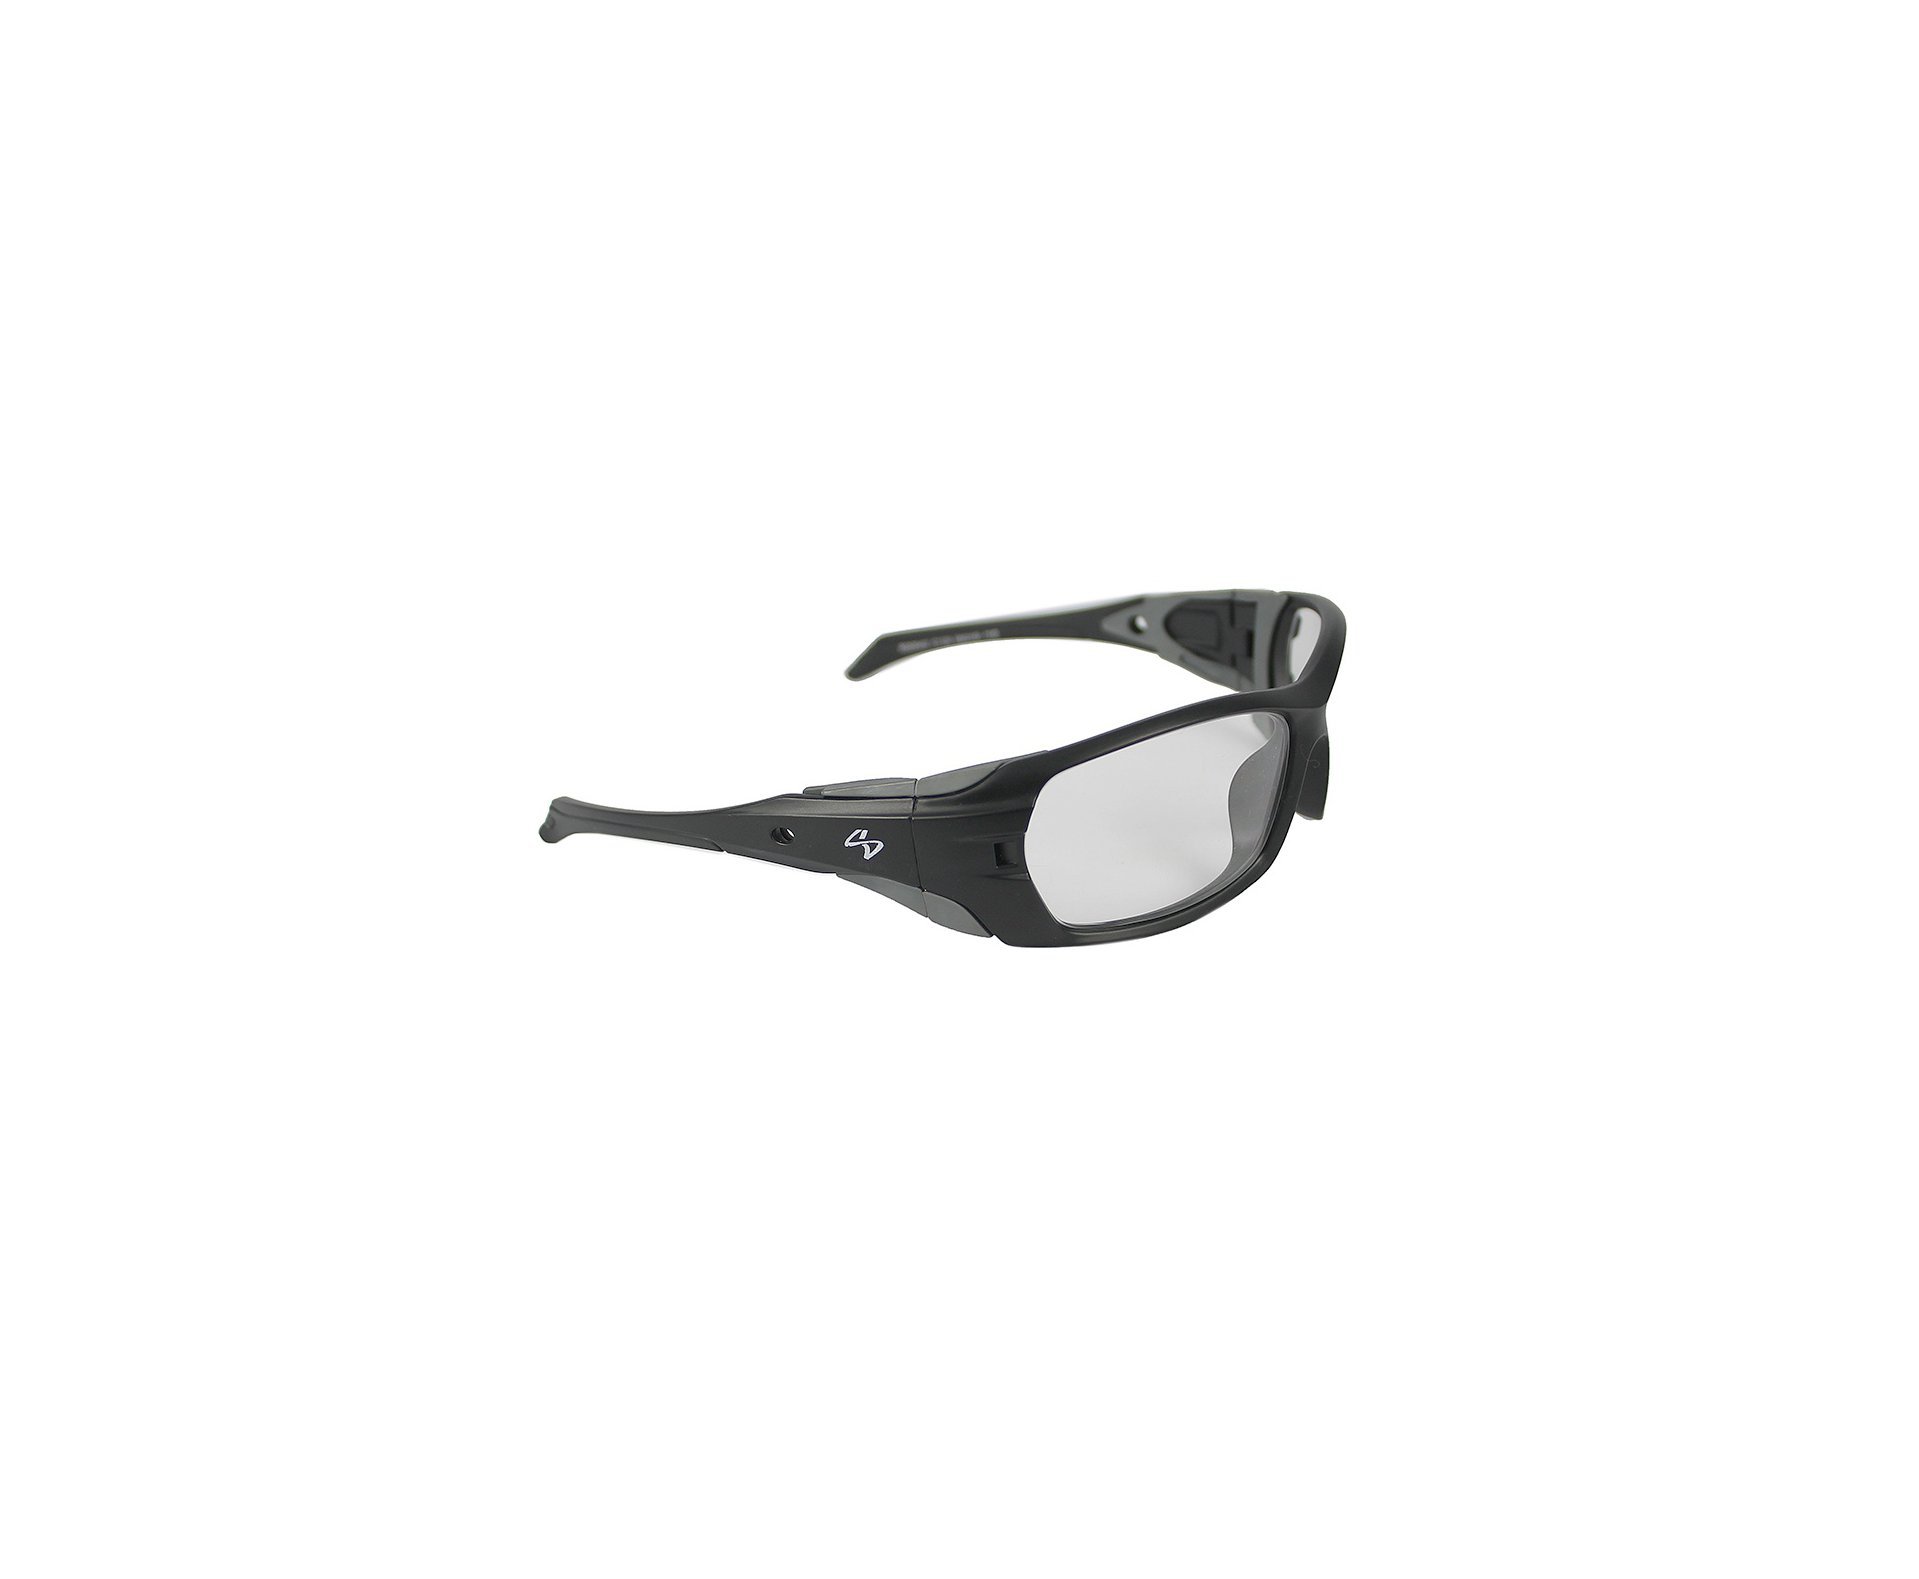 Óculos Balístico com Armação Preto Fosco - Lente Transparente 20542 - C100 - Insano Shades